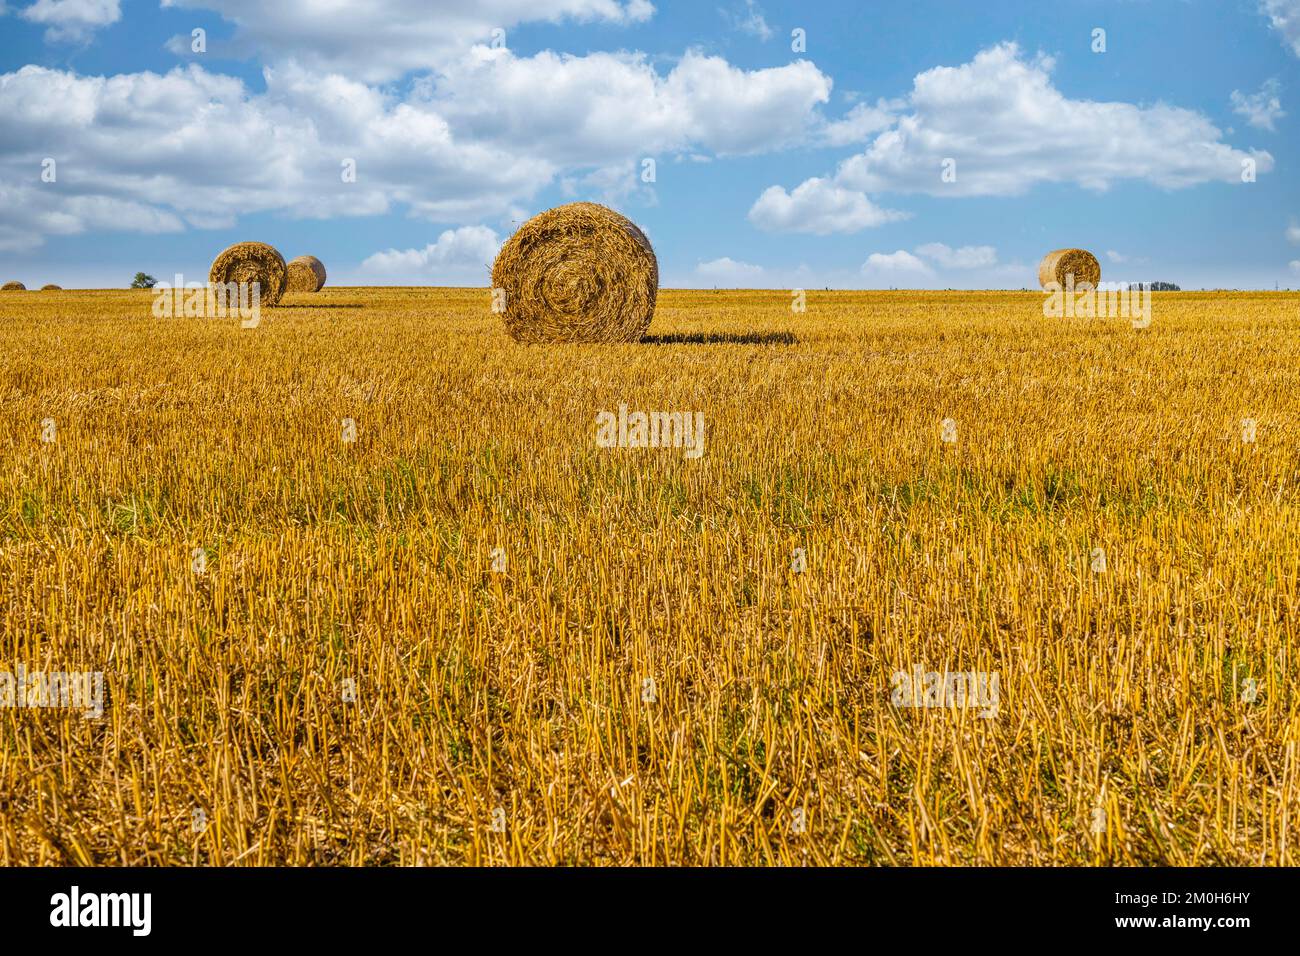 Agriculture champ après récolte avec de grandes balles de foin dans un champ de blé. Banque D'Images